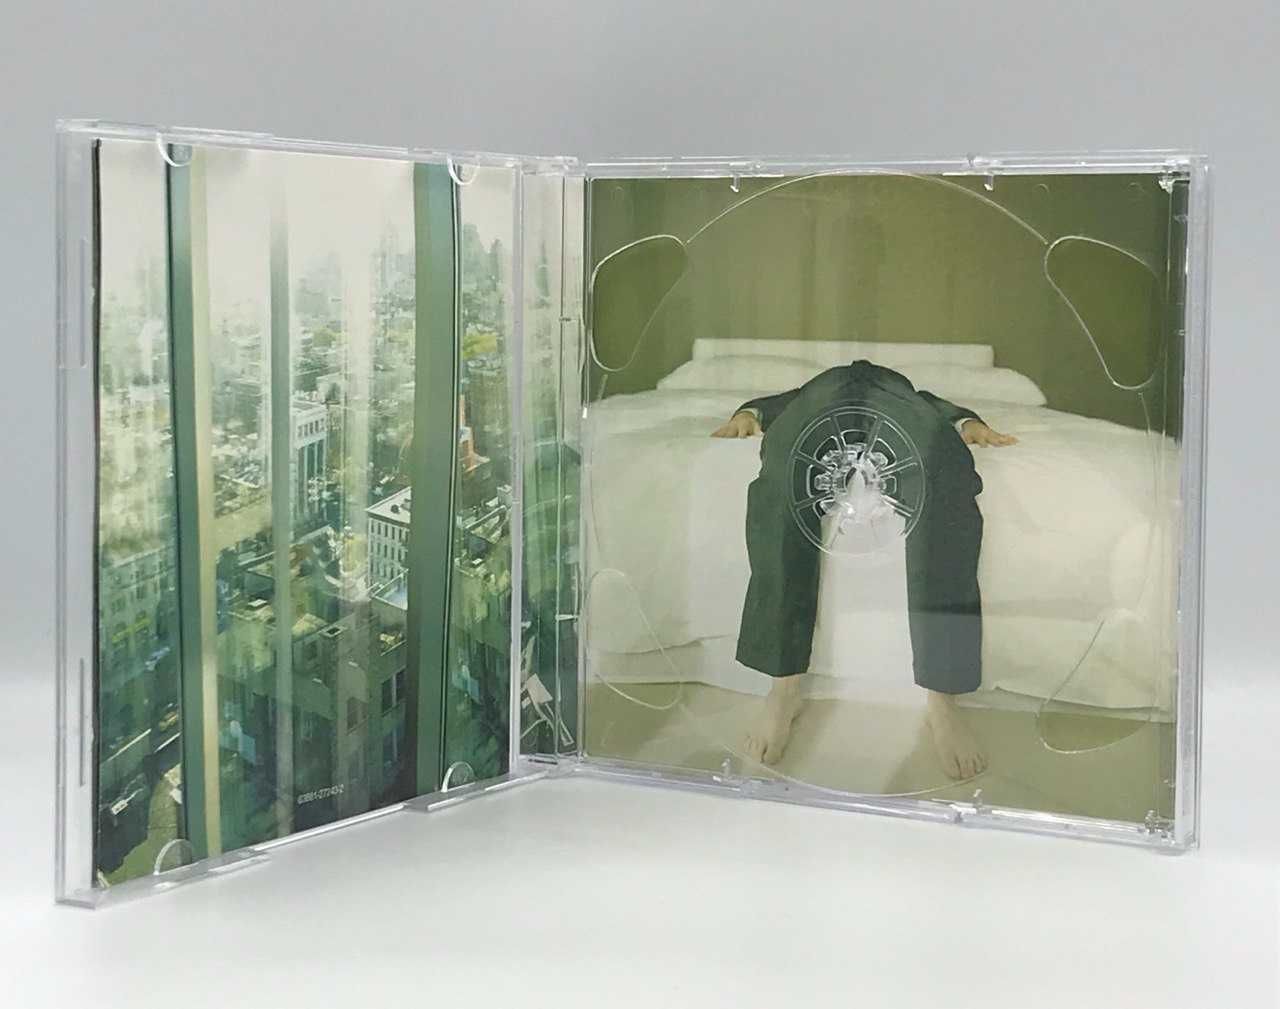 Moby – Hotel / CD, 2 CD (2005, E.U. / U.S.A.)